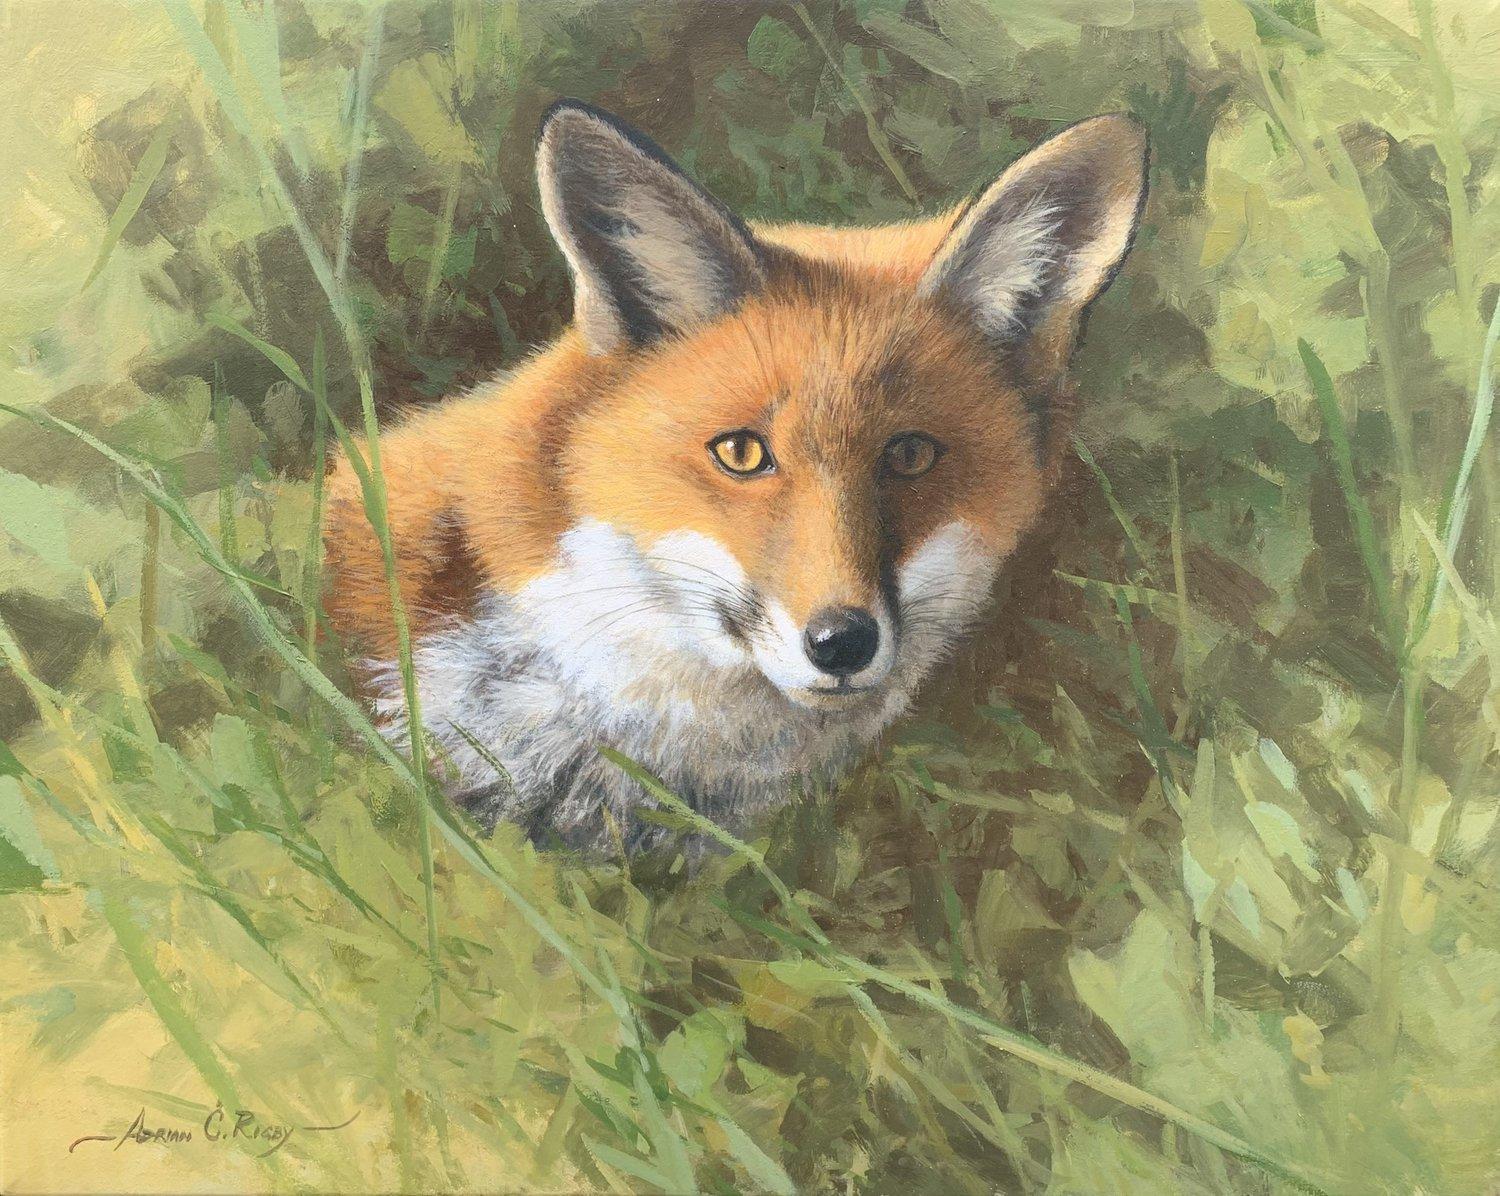 Adrian Rigby, „Fox Portrait“, 16x20, Rotes Fuchs-Landschaft, Ölgemälde auf Leinwand